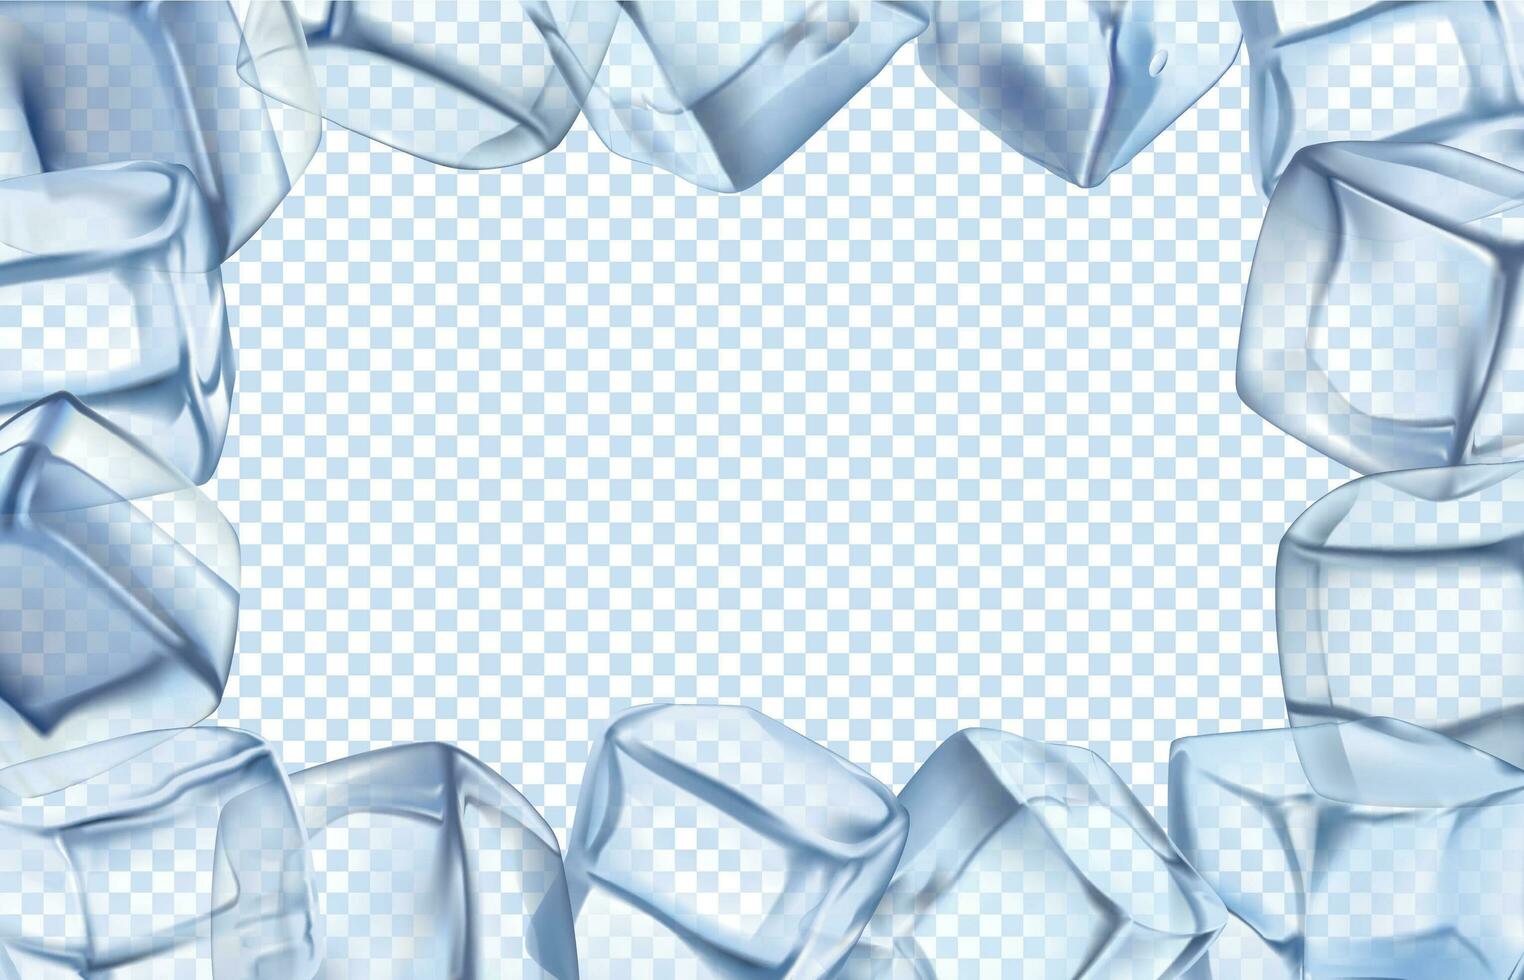 is kuber ram. kyla gräns, isig kall kub och iced rektangulär ram isolerat vektor illustration